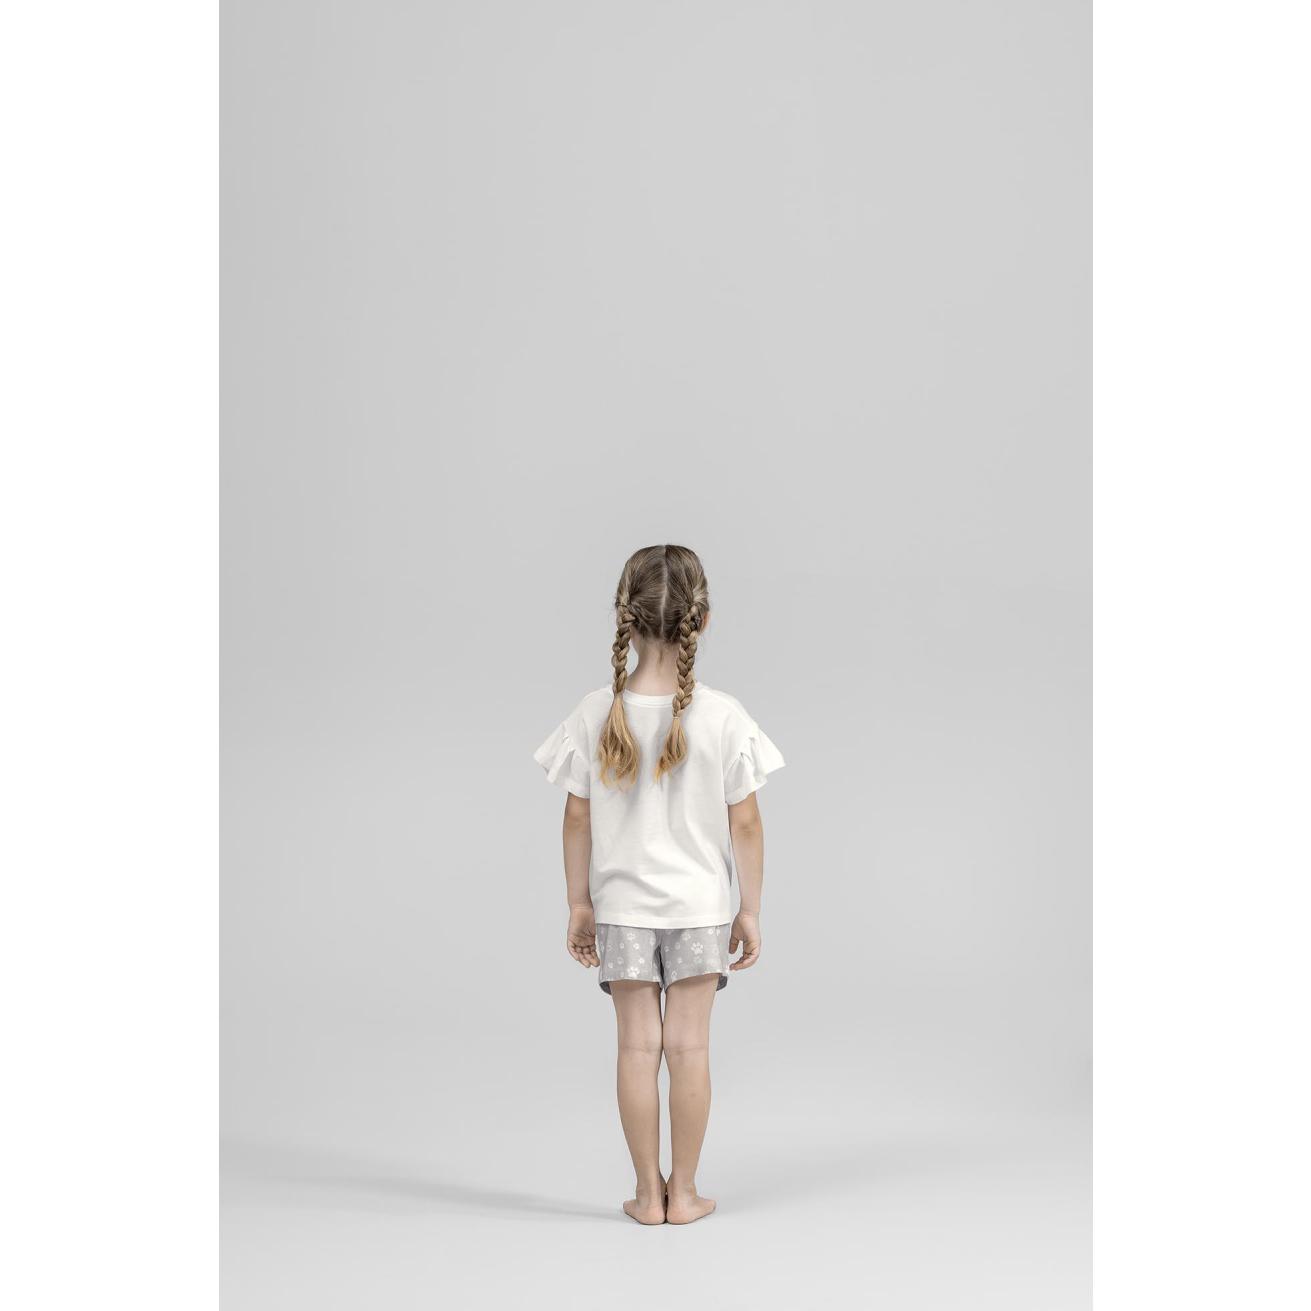 Пижама для девочек Kids by togas Китти бело-серая 92-98 см, цвет белый, размер 92-98 см - фото 5